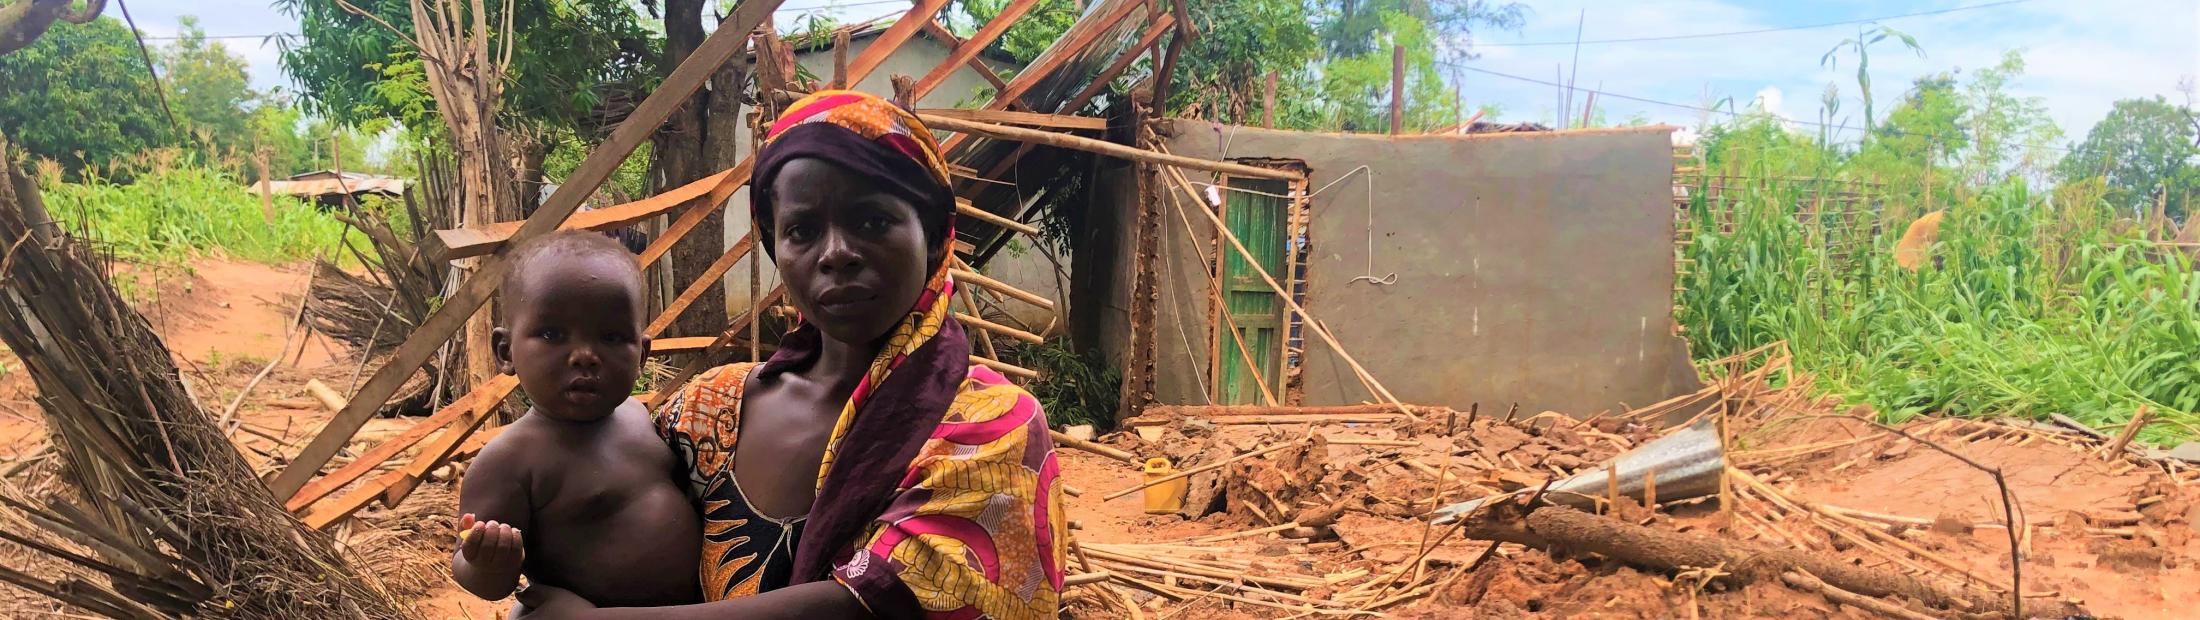 Moçambique: a emergência invisível que precisa de si